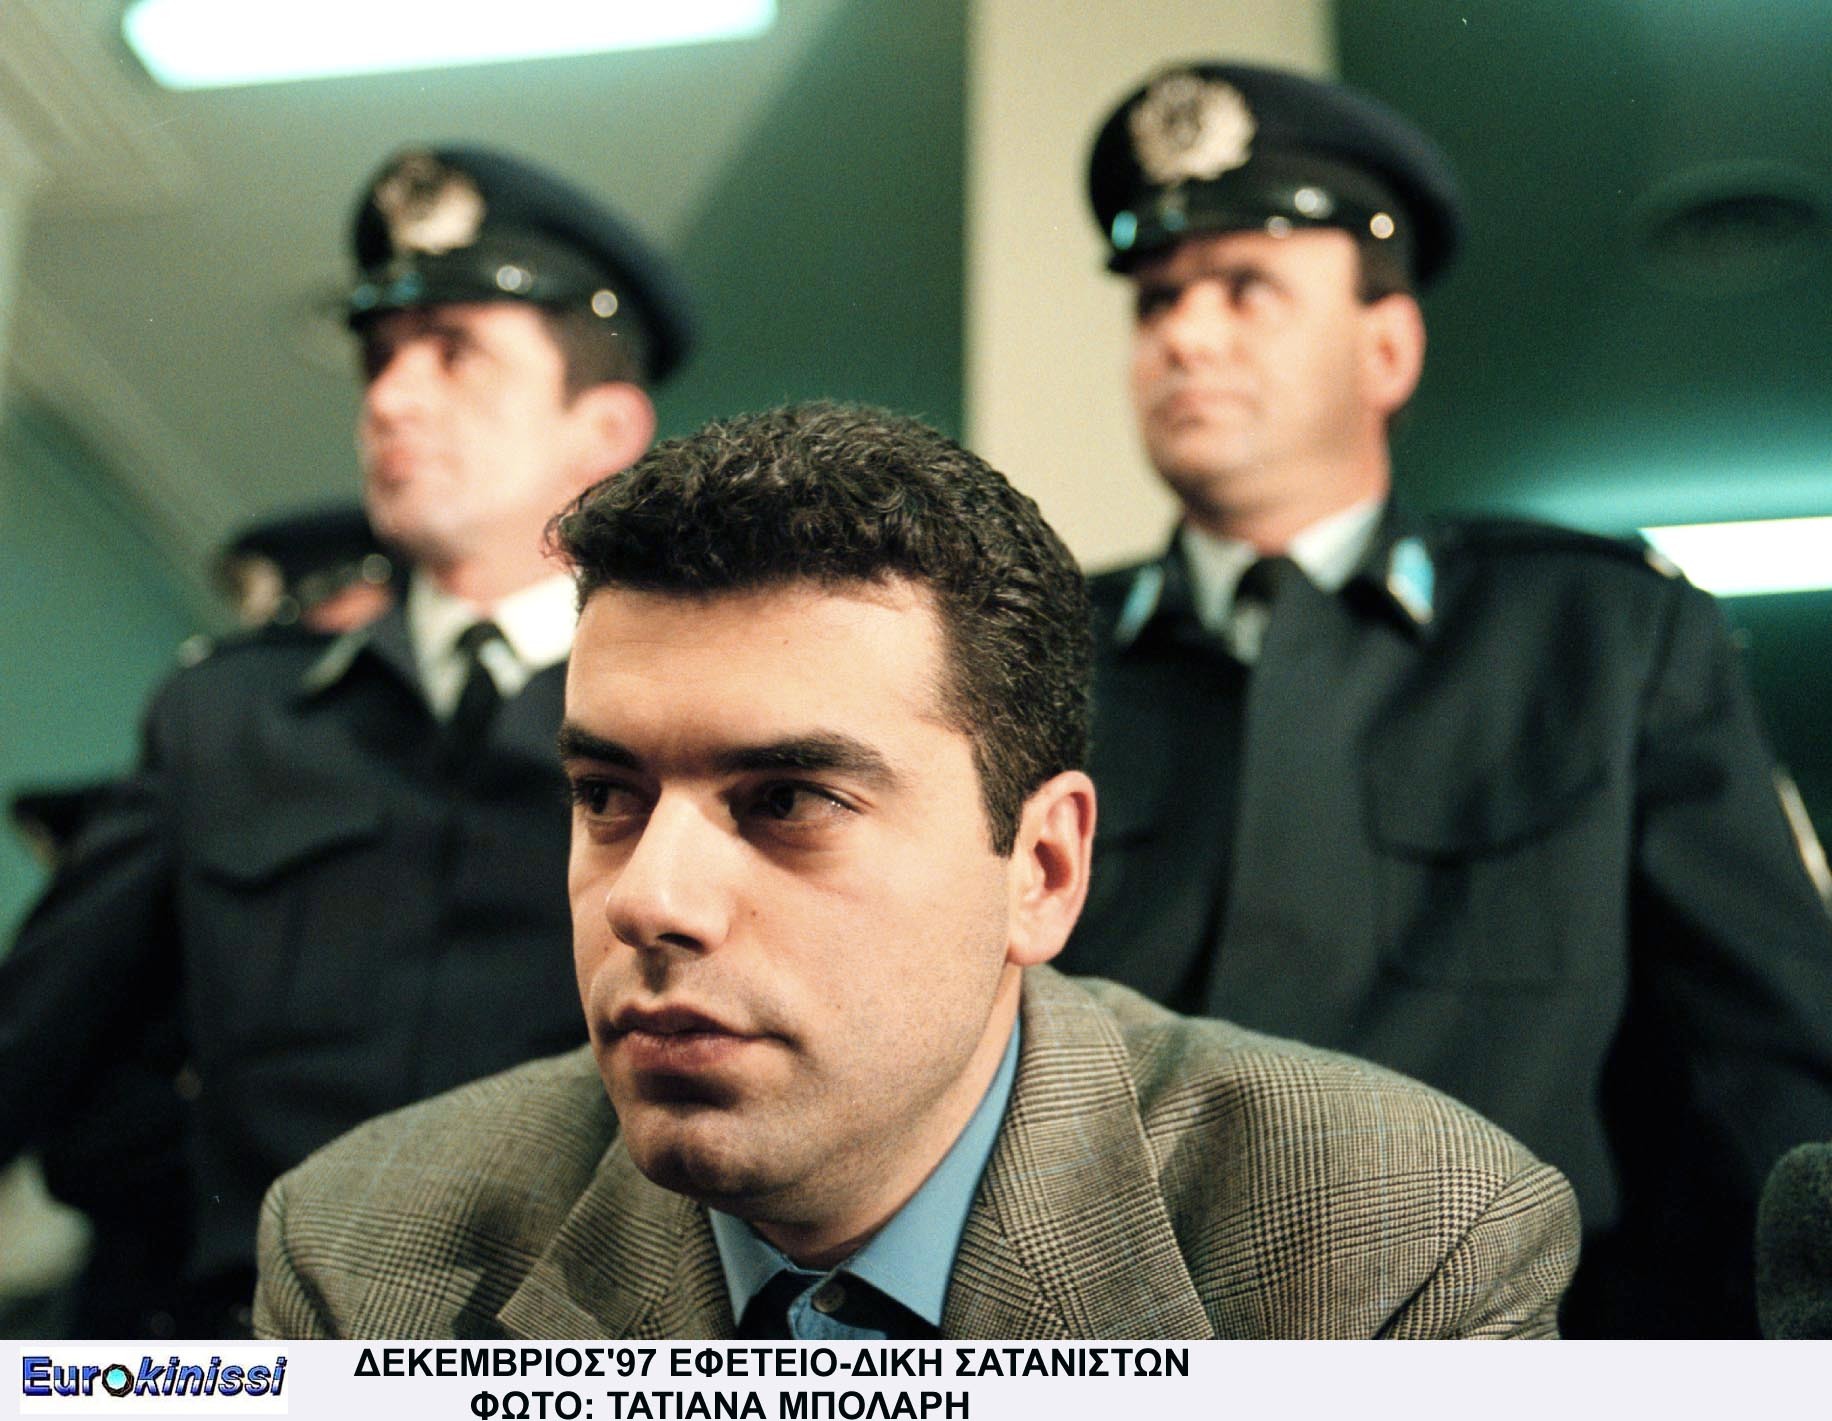 Ο Ασημάκης Κατσούλας στη δίκη των σατανιστών το Δεκέμβριο του 1997. ΦΩΤΟ EUROKINISSI